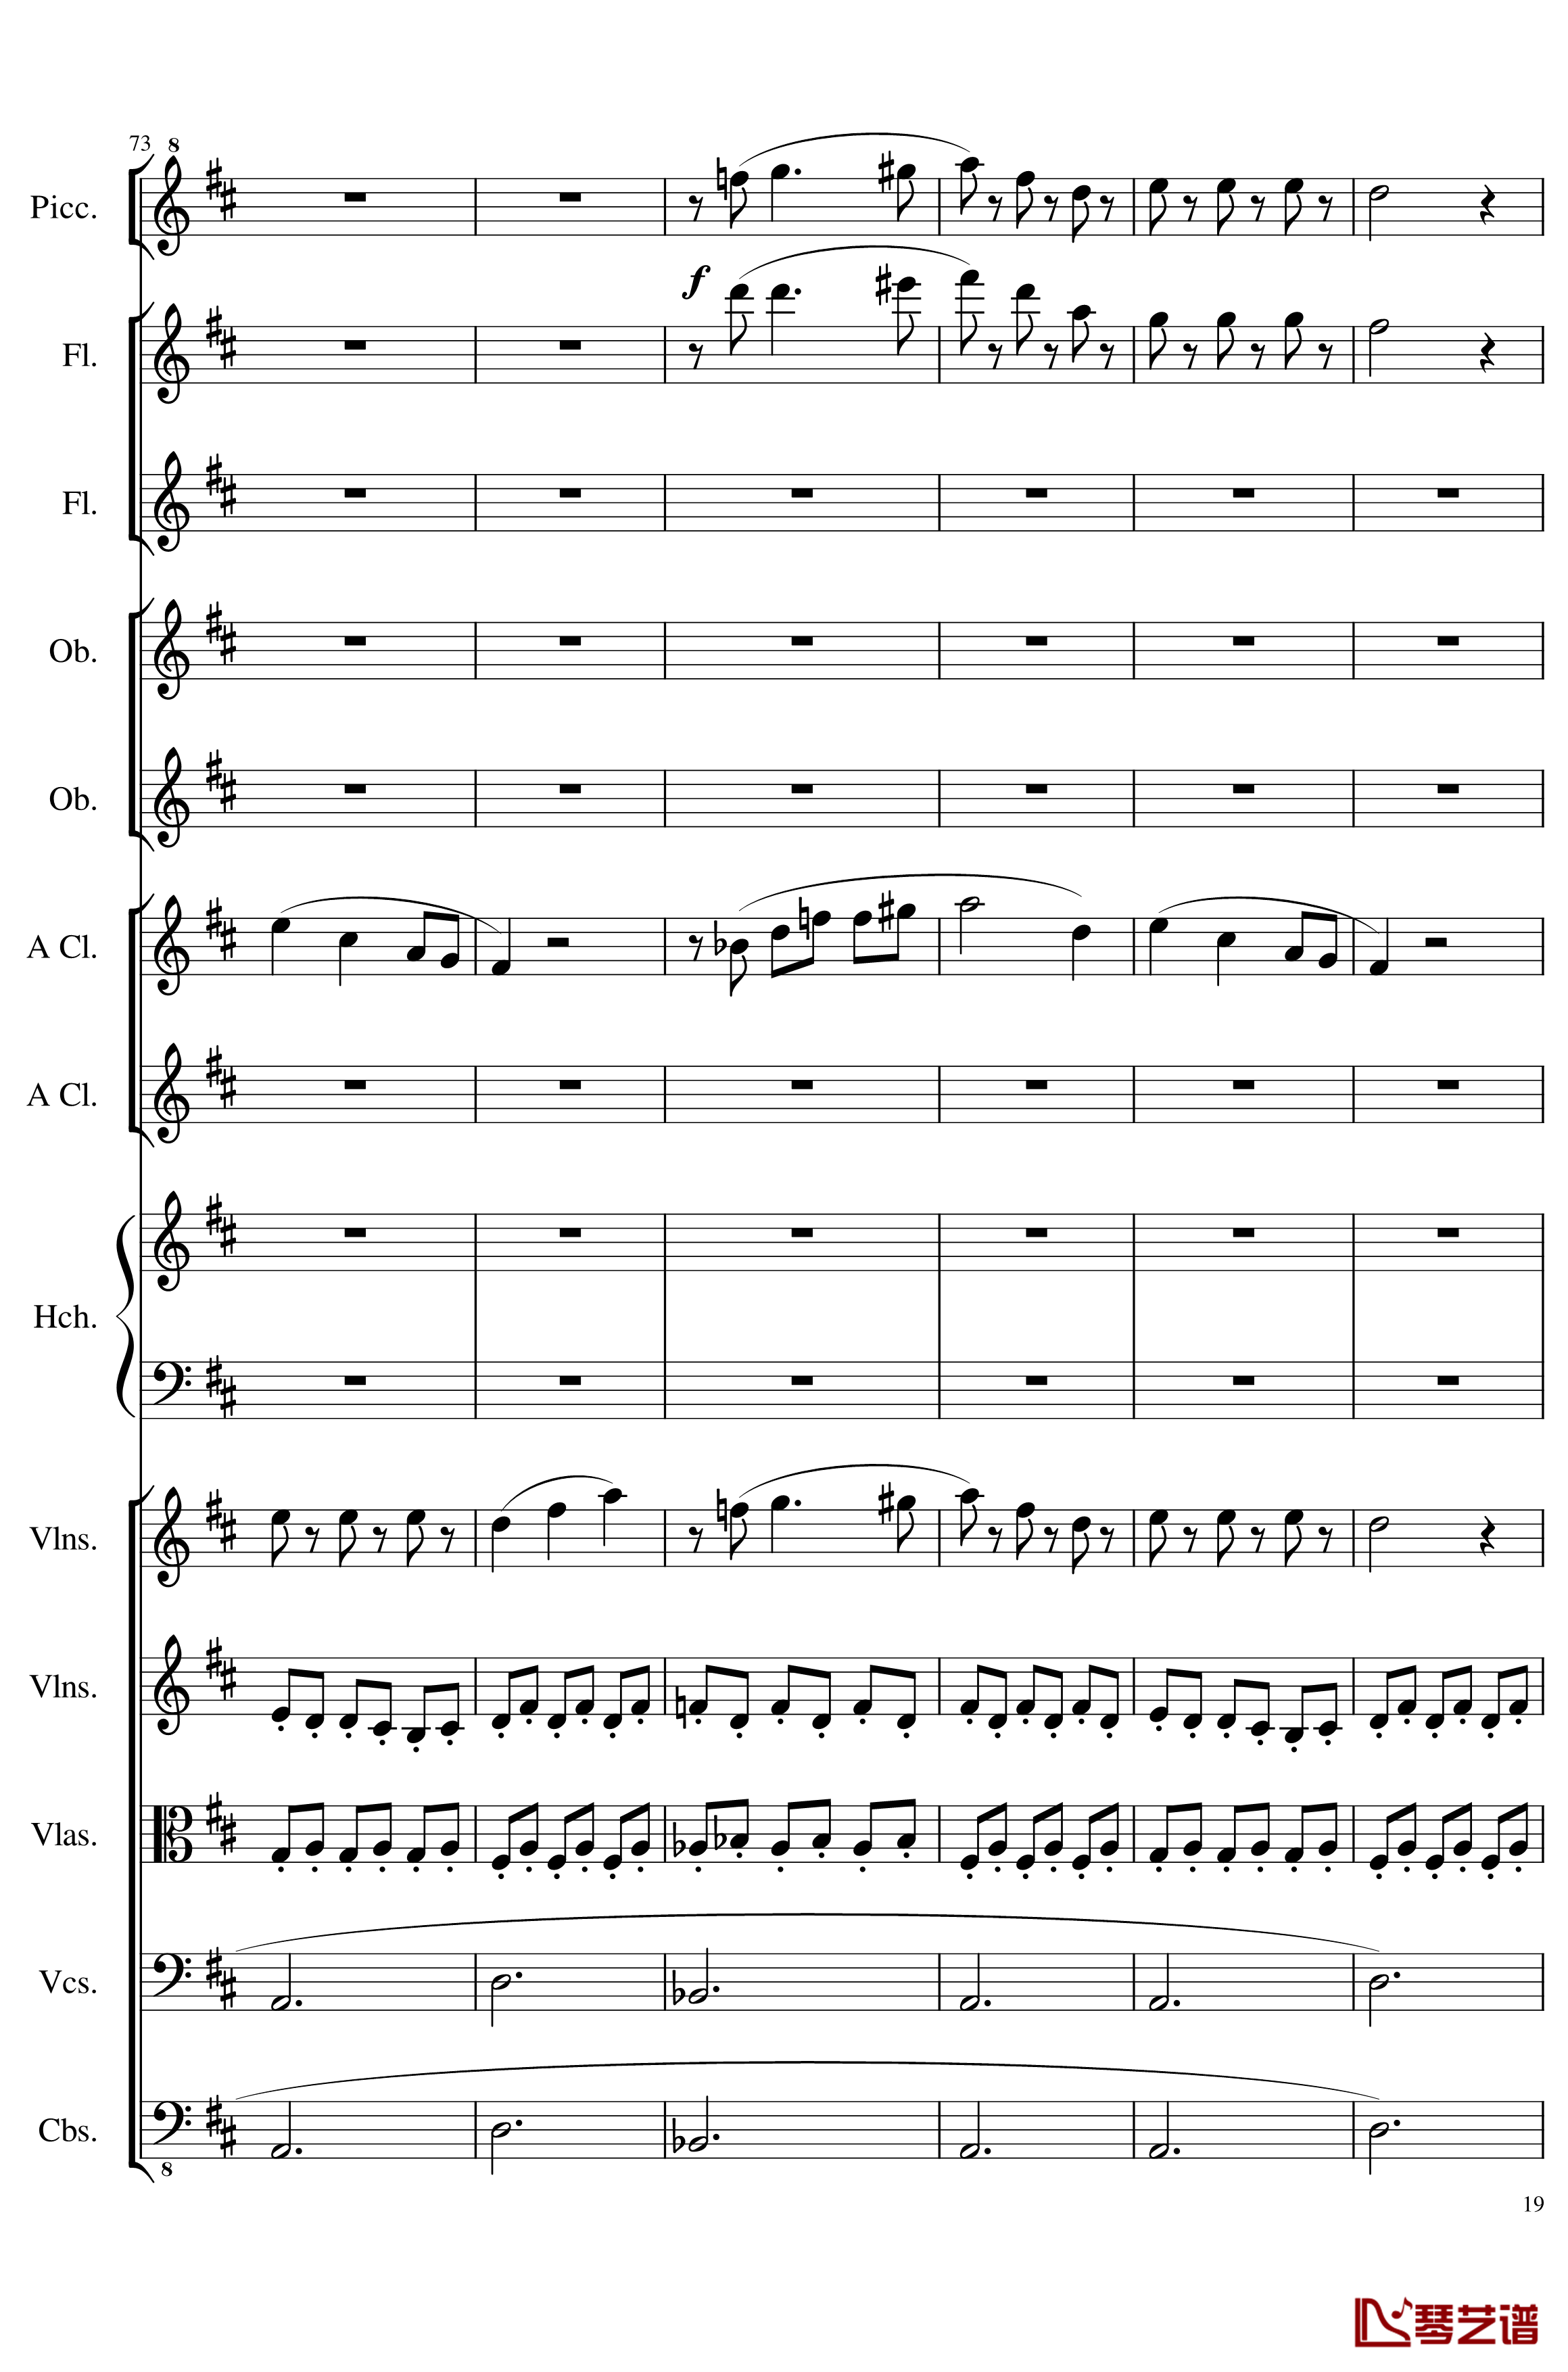 7 Contredanses No.1-7, Op.124钢琴谱-7首乡村舞曲，第一至第七，作品124-一个球19